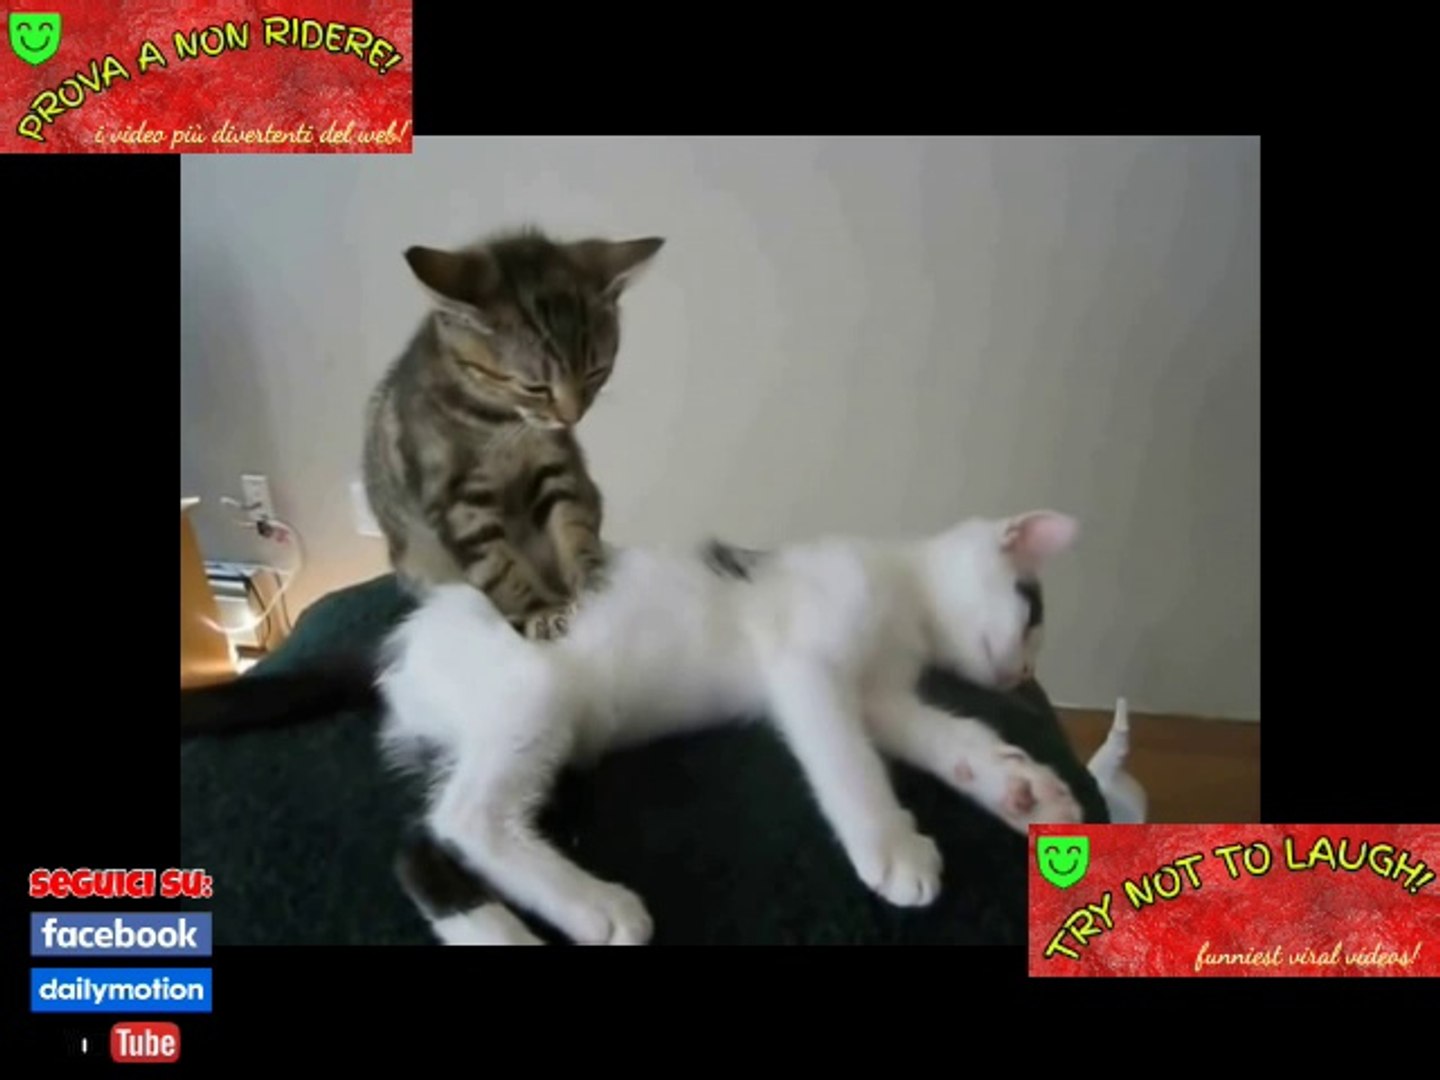 le migliori scene di gatti che fanno ridere - PROVA A NON RIDERE - Video  Dailymotion